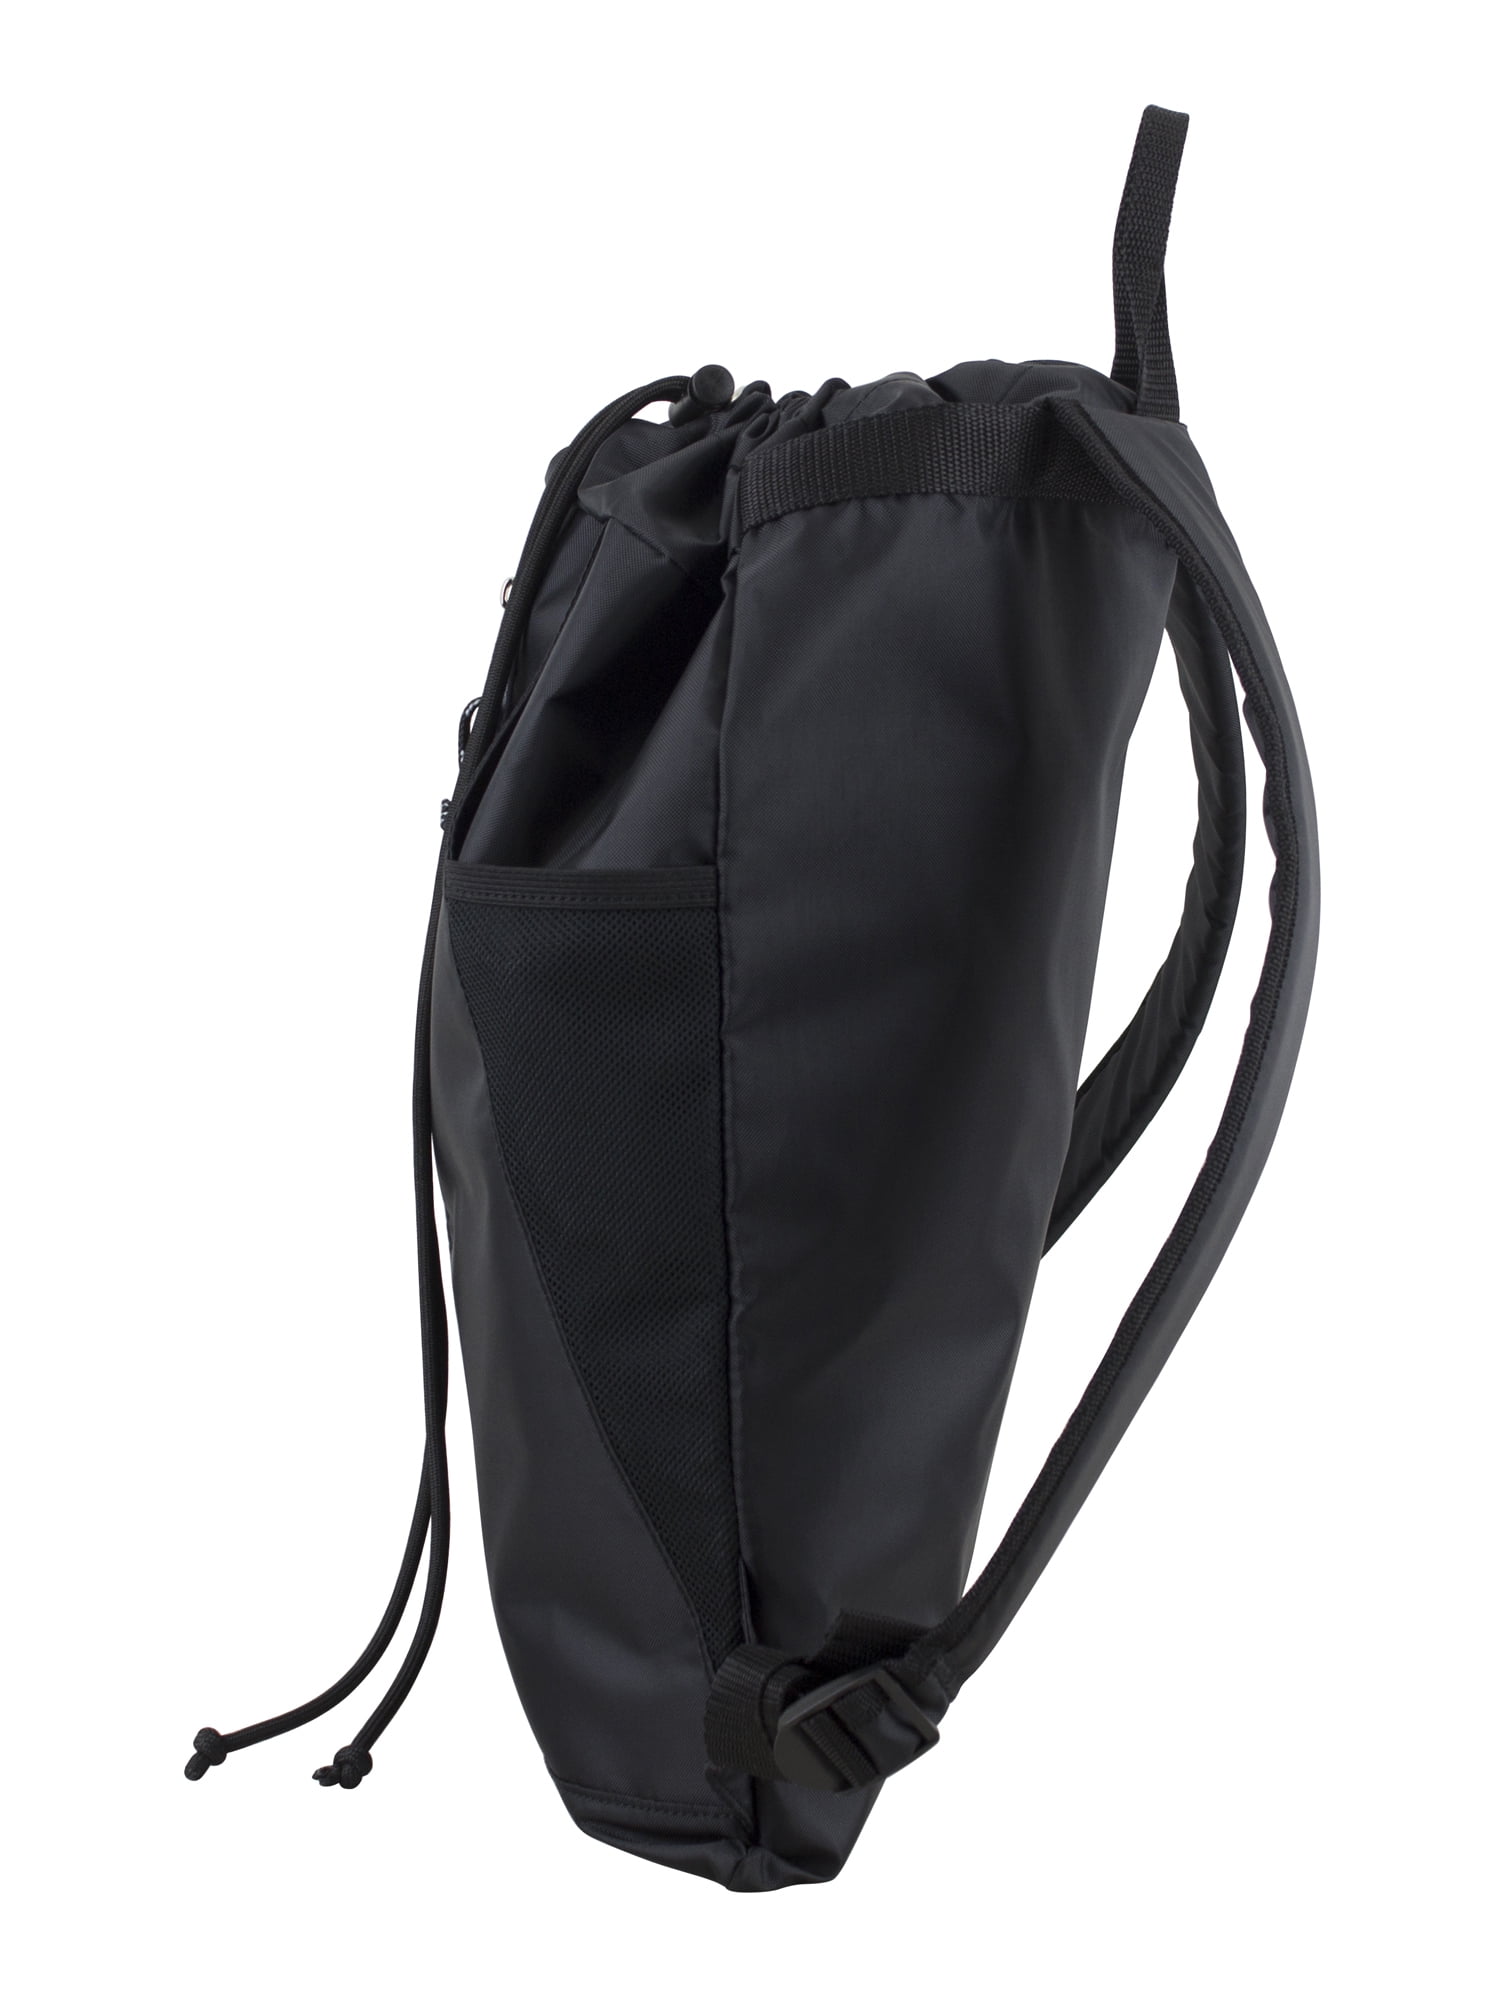 Athletic Works Sling Bag/Drawstring Backpack 